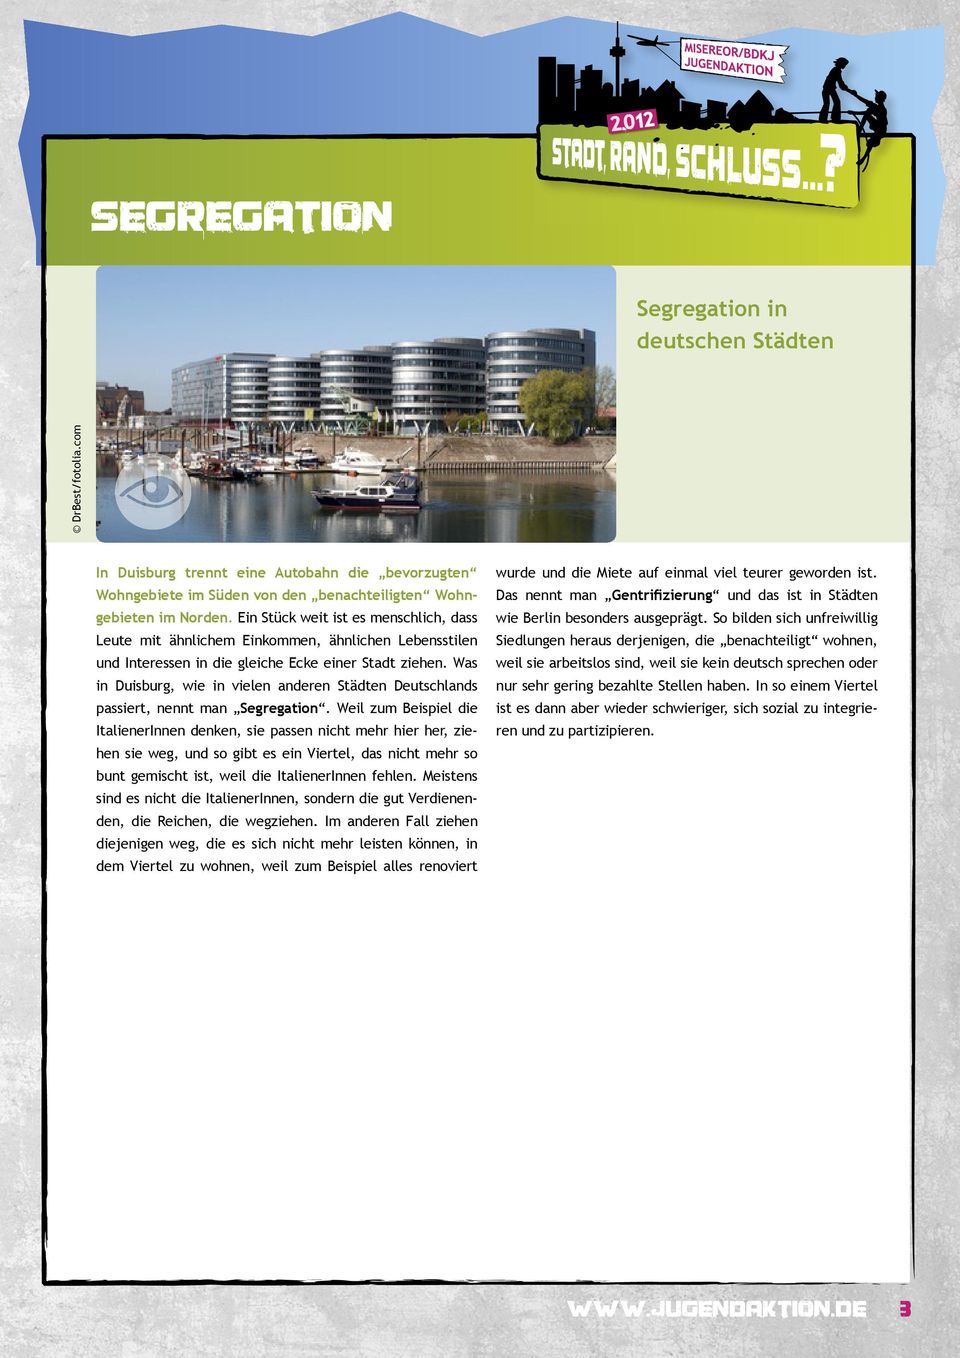 Was in Duisburg, wie in vielen anderen Städten Deutschlands passiert, nennt man Segregation.